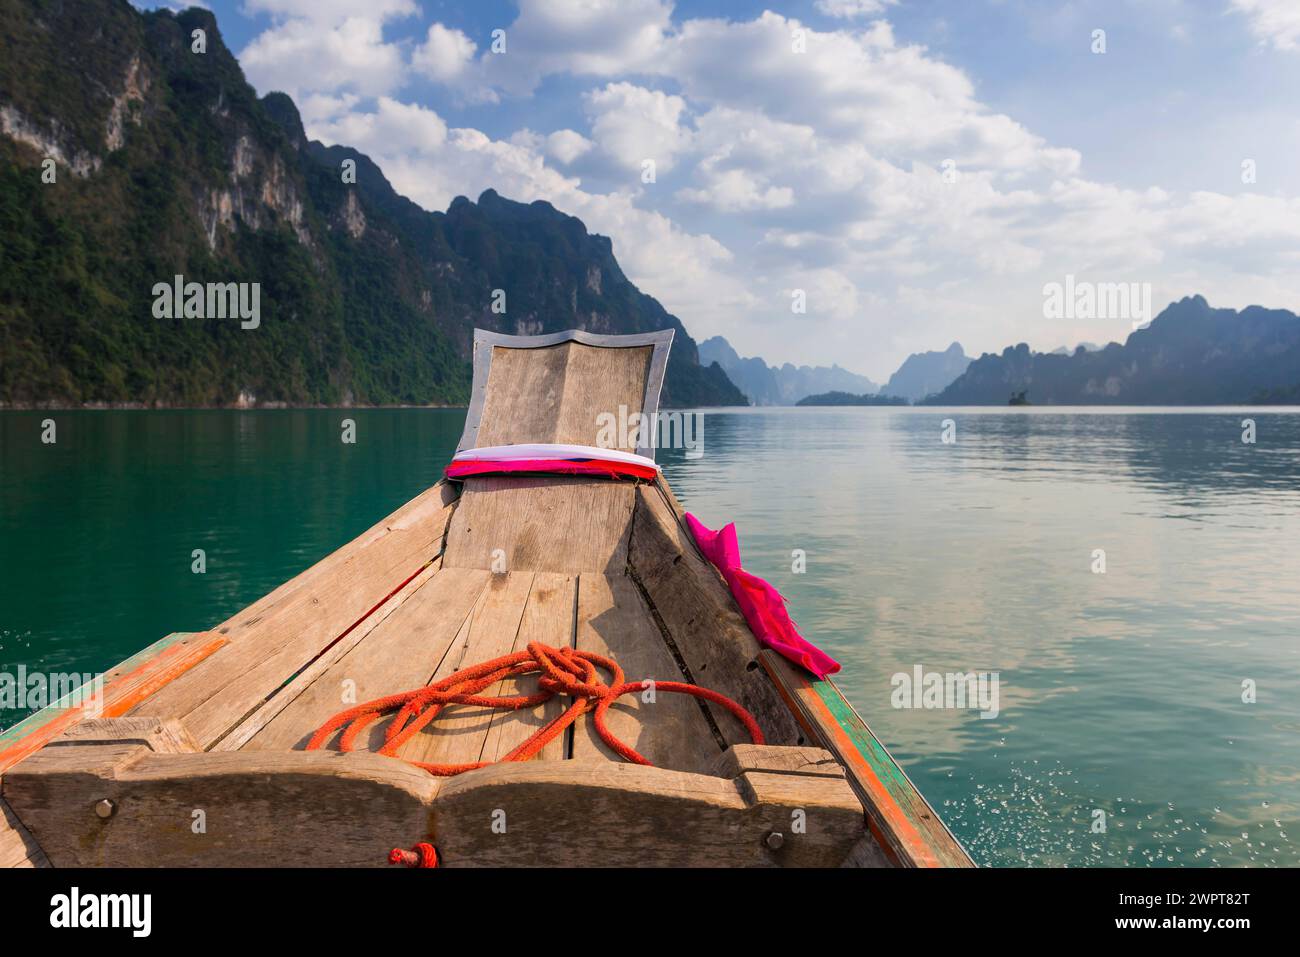 Barca tradizionale a coda lunga di fronte alle rocce calcaree del lago Cheow LAN nel parco nazionale di Khao Sok, natura, viaggio, vacanza, lago, serbatoio Foto Stock